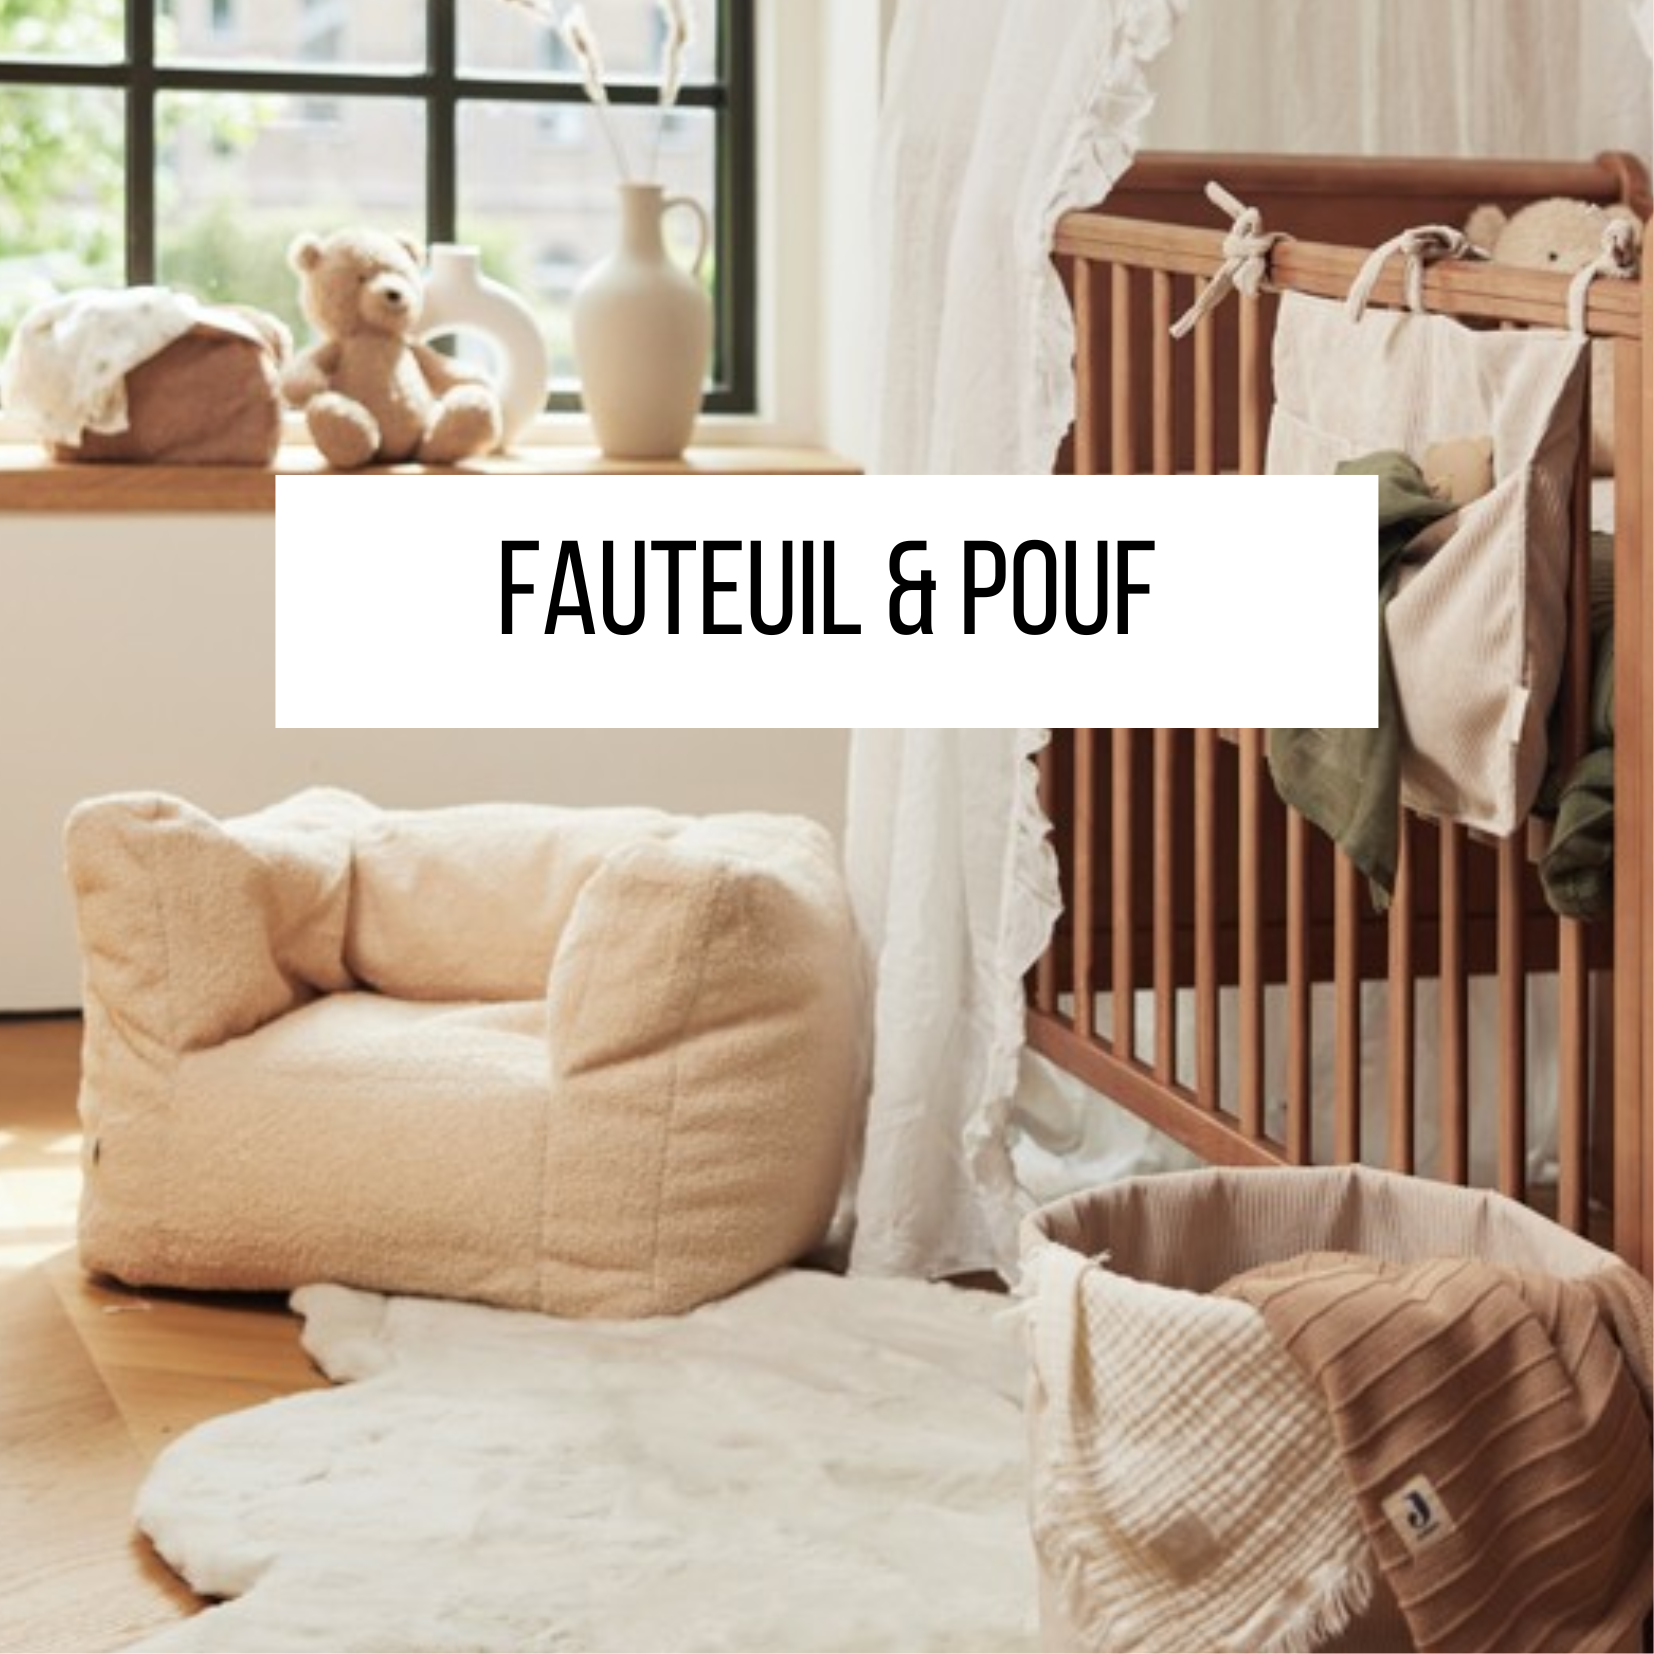 FAUTEUIL POUF RELAX CHAISE TABLE DECORATION CHAMBRE ENFANT